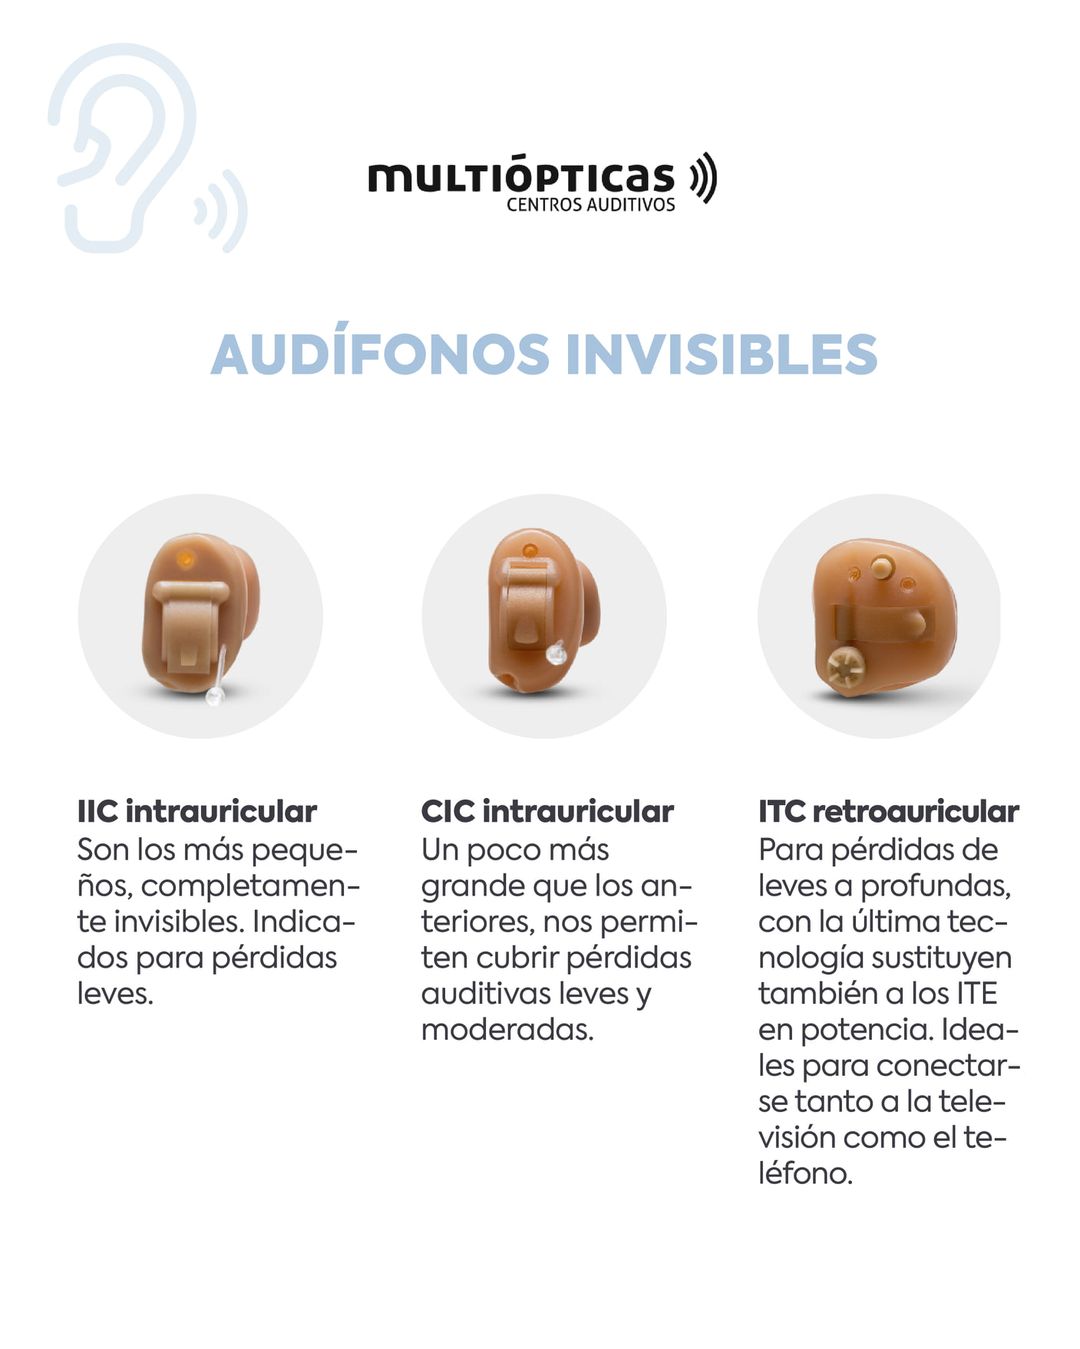 Audífonos invisibles, cada vez más frecuentes - Biacustic